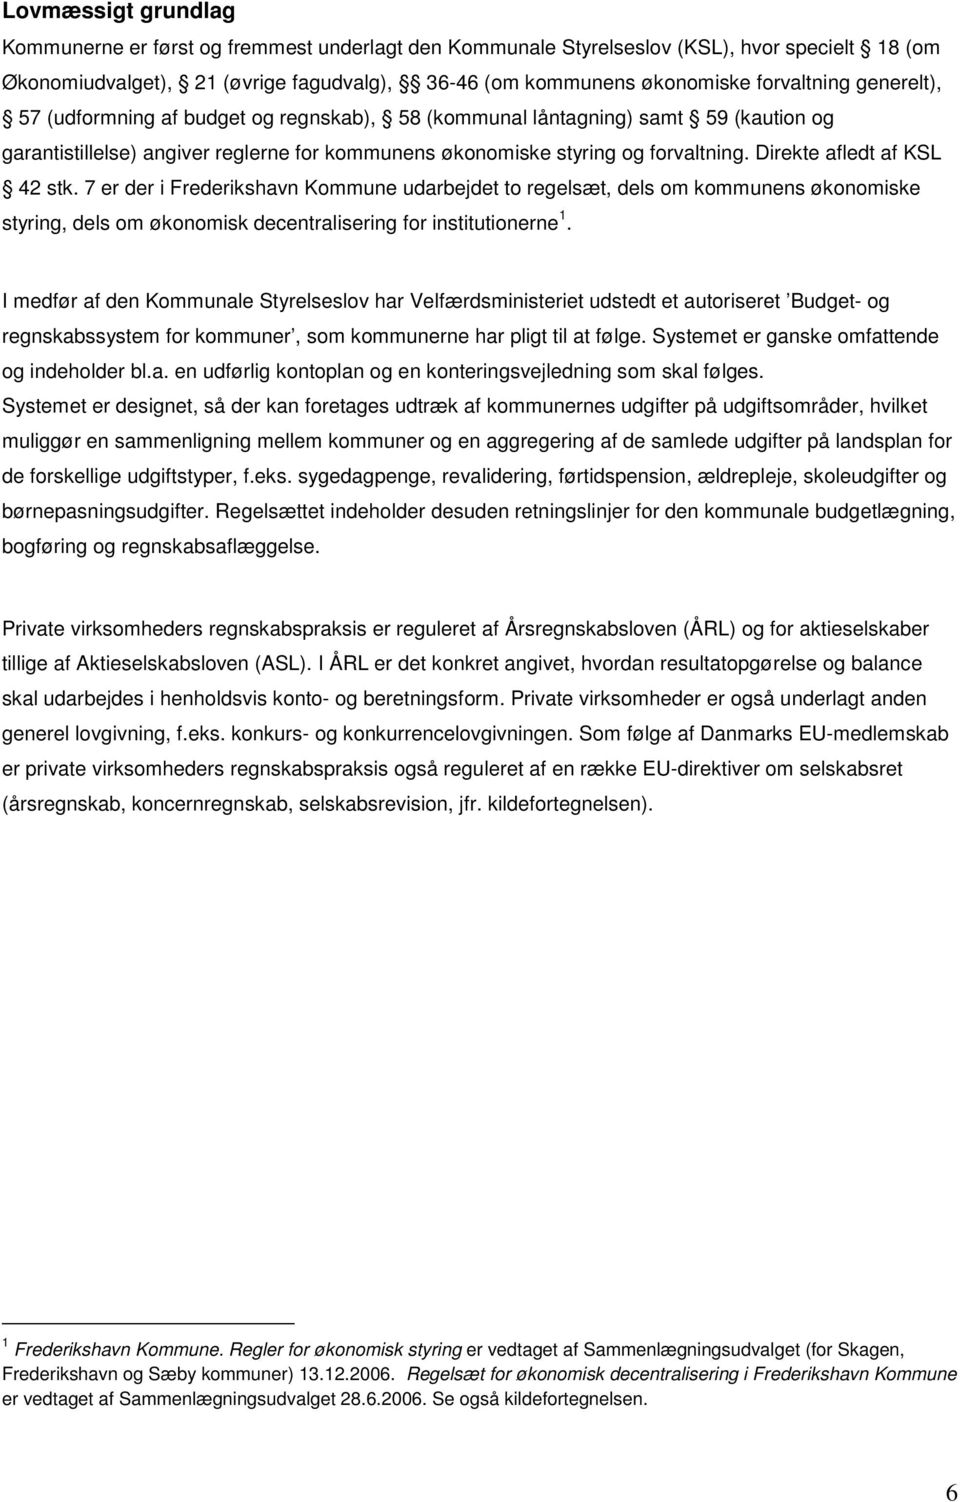 Direkte afledt af KSL 42 stk. 7 er der i Frederikshavn Kommune udarbejdet to regelsæt, dels om kommunens økonomiske styring, dels om økonomisk decentralisering for institutionerne 1.